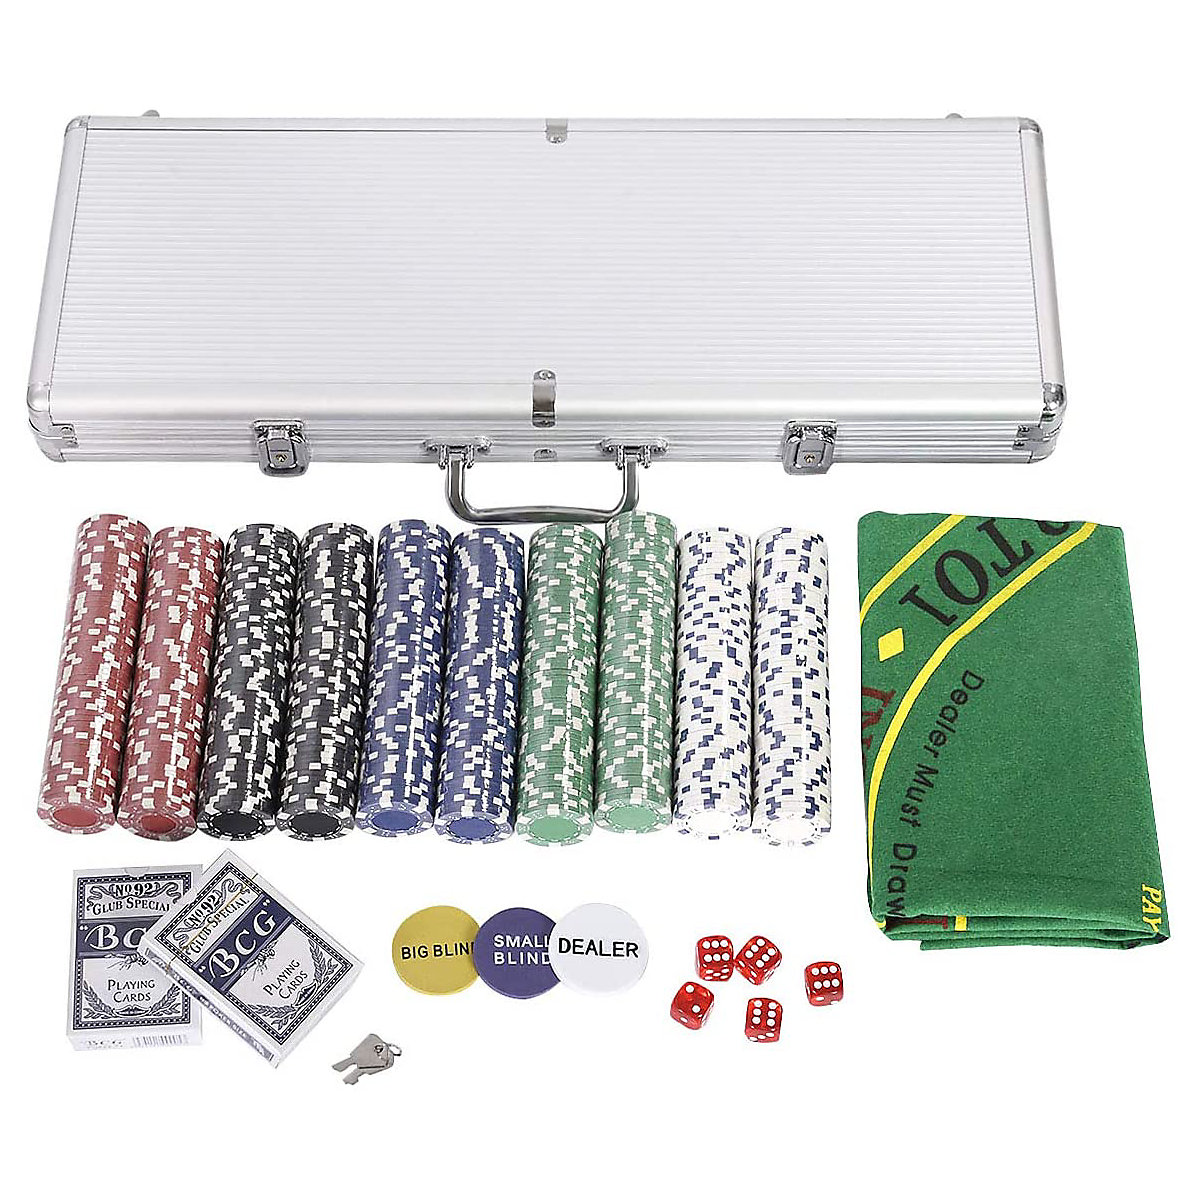 COSTWAY® Pokerset mit 500 Laser-Chips